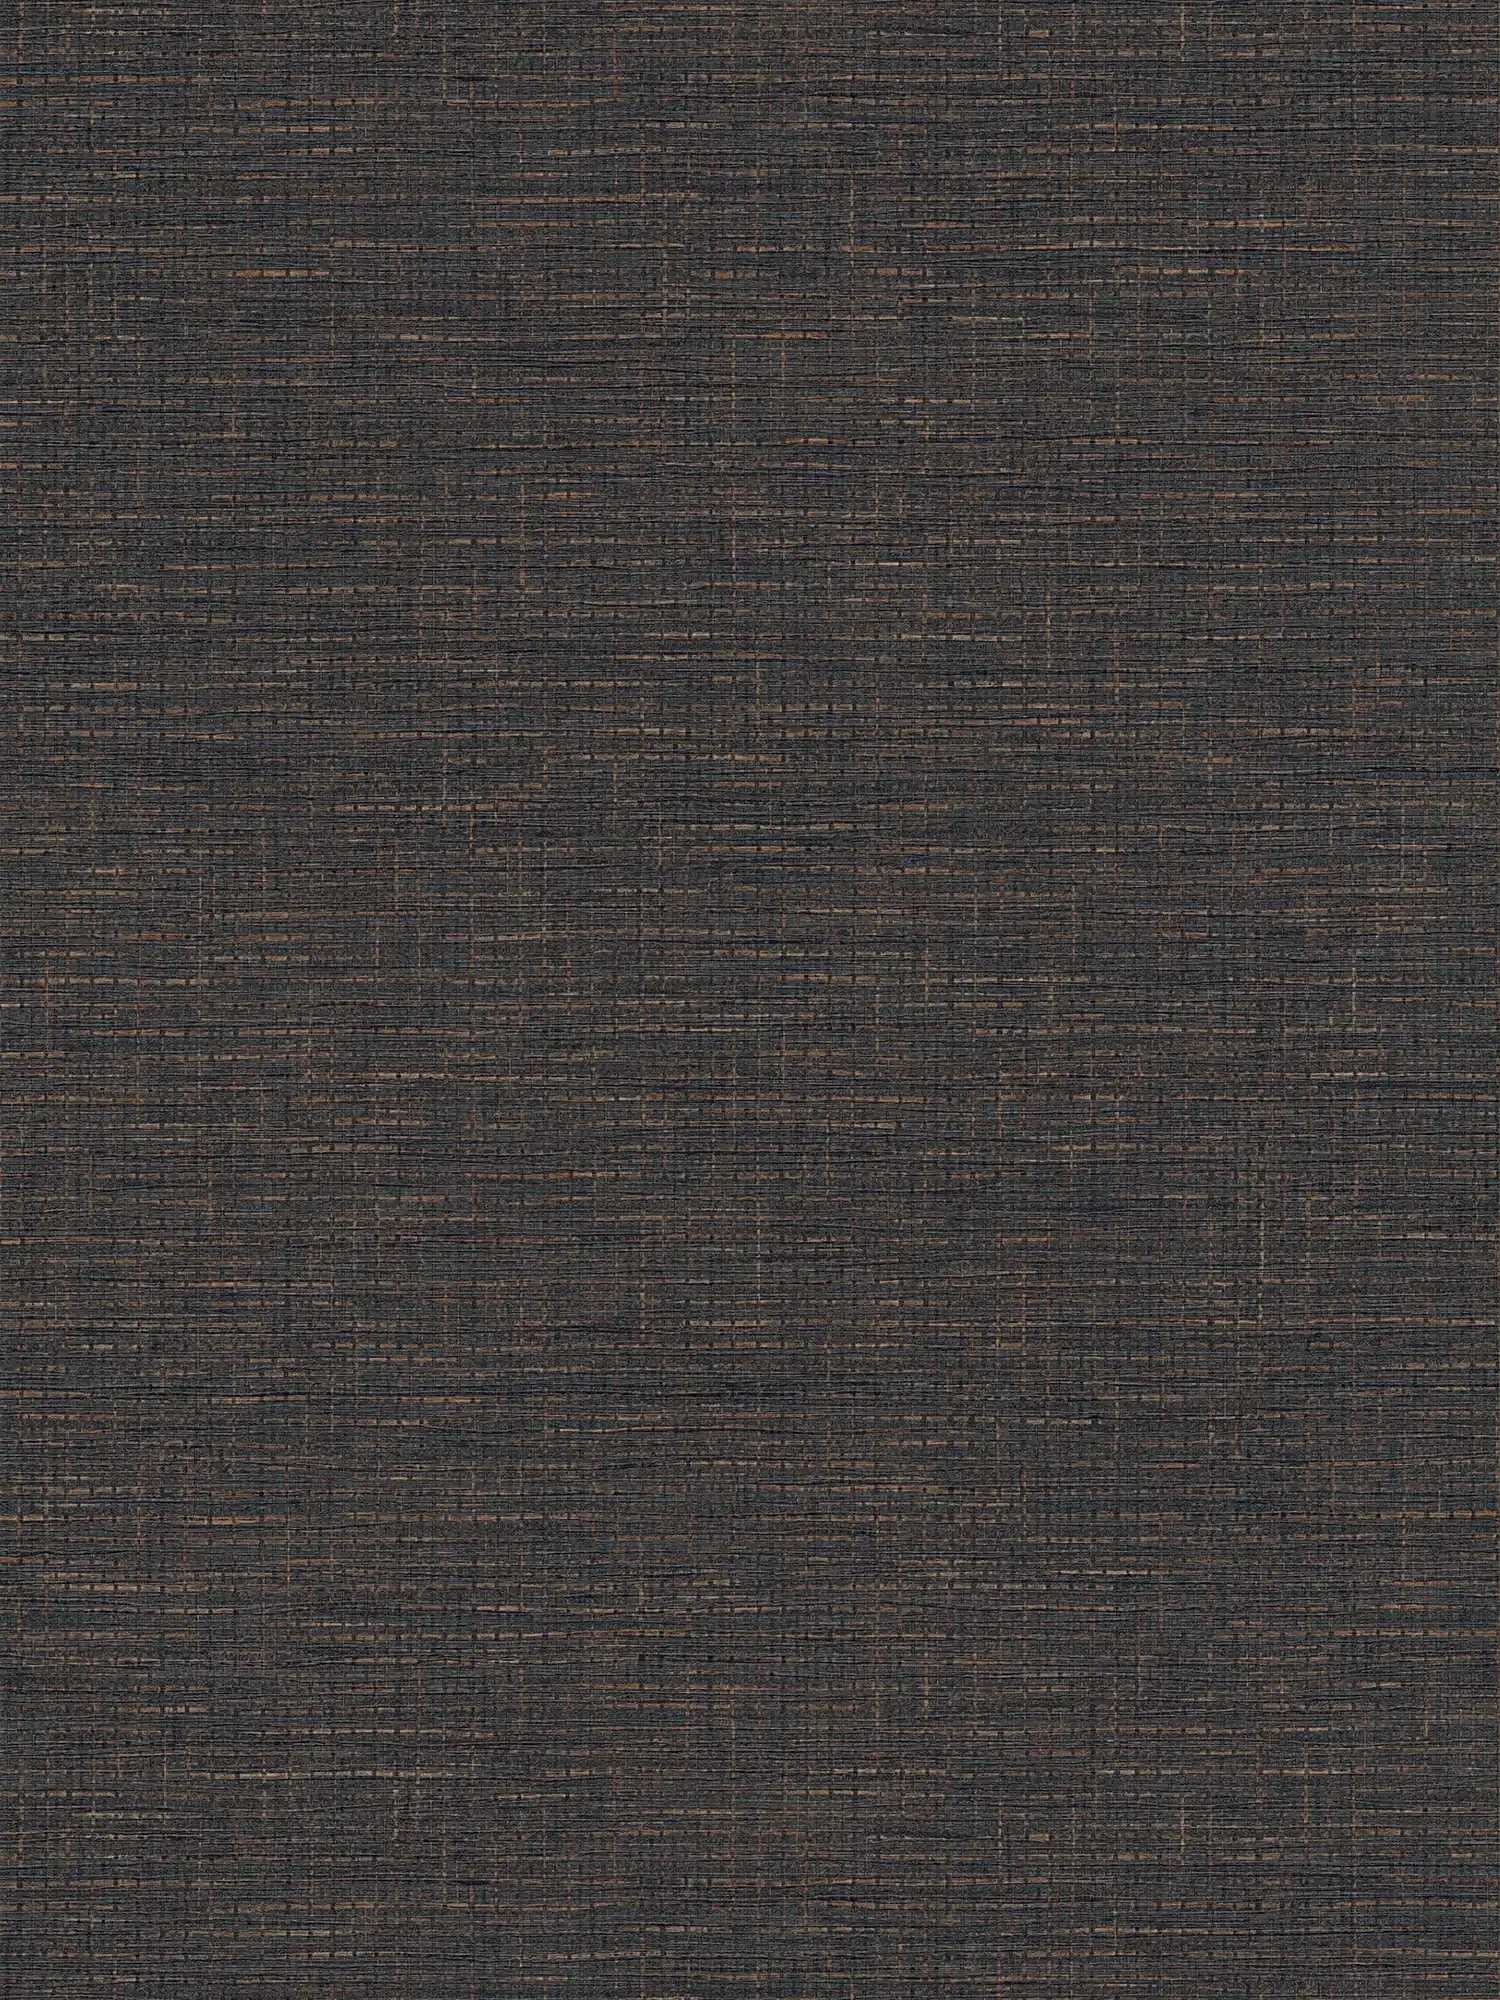 Papier peint marron foncé avec motif raphia, mat & structuré
